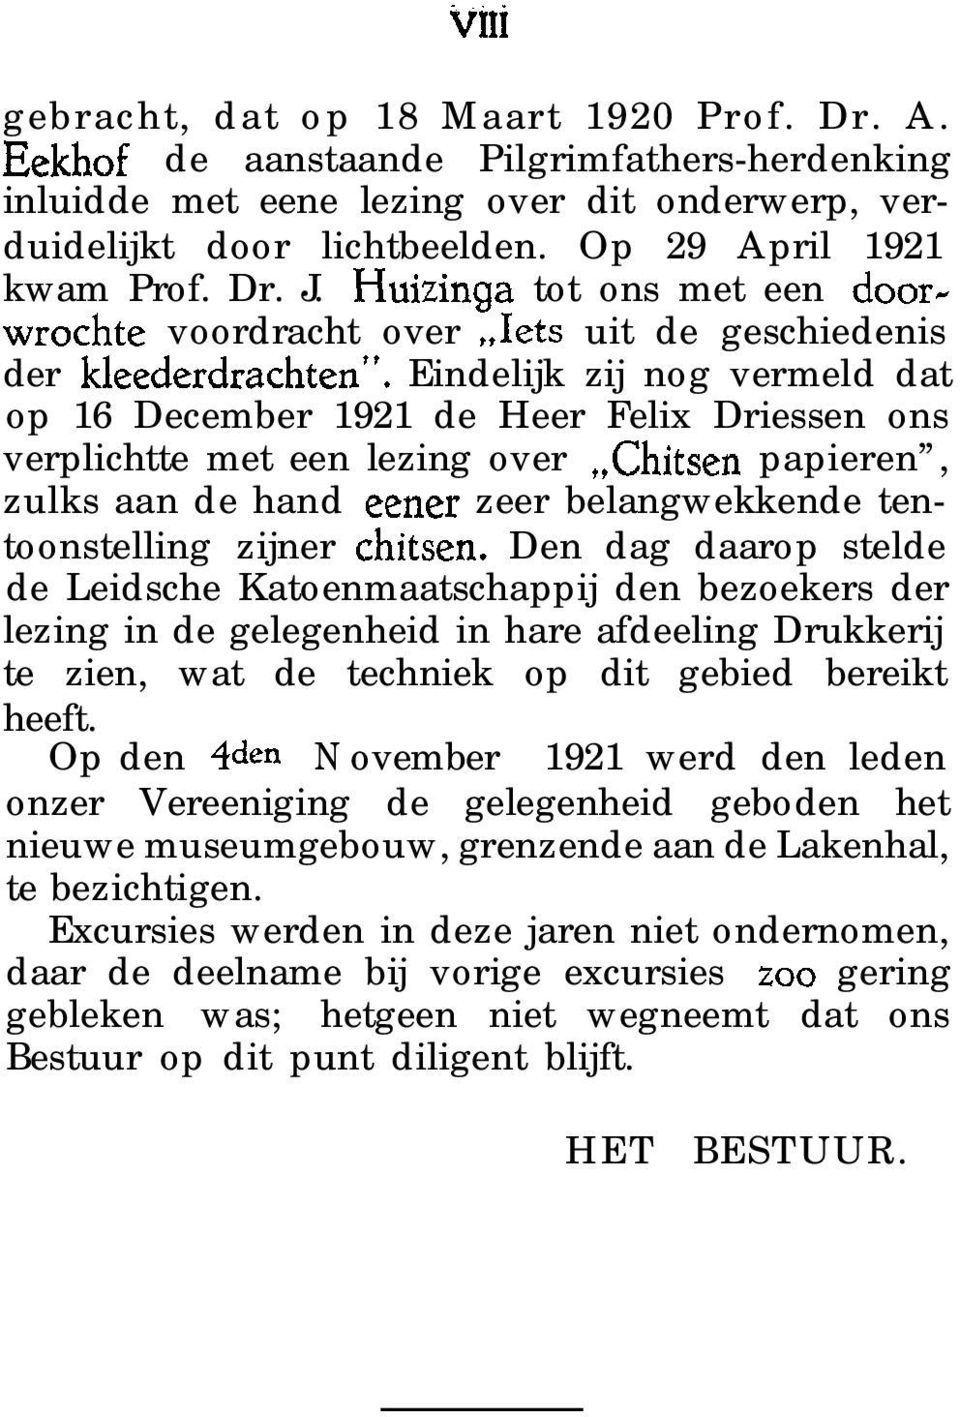 Eindelijk zij nog vermeld dat op 16 December 1921 de Heer Felix Driessen ons verplichtte met een lezing over,,chitsen papieren, zulks aan de hand eener zeer belangwekkende tentoonstelling zijner